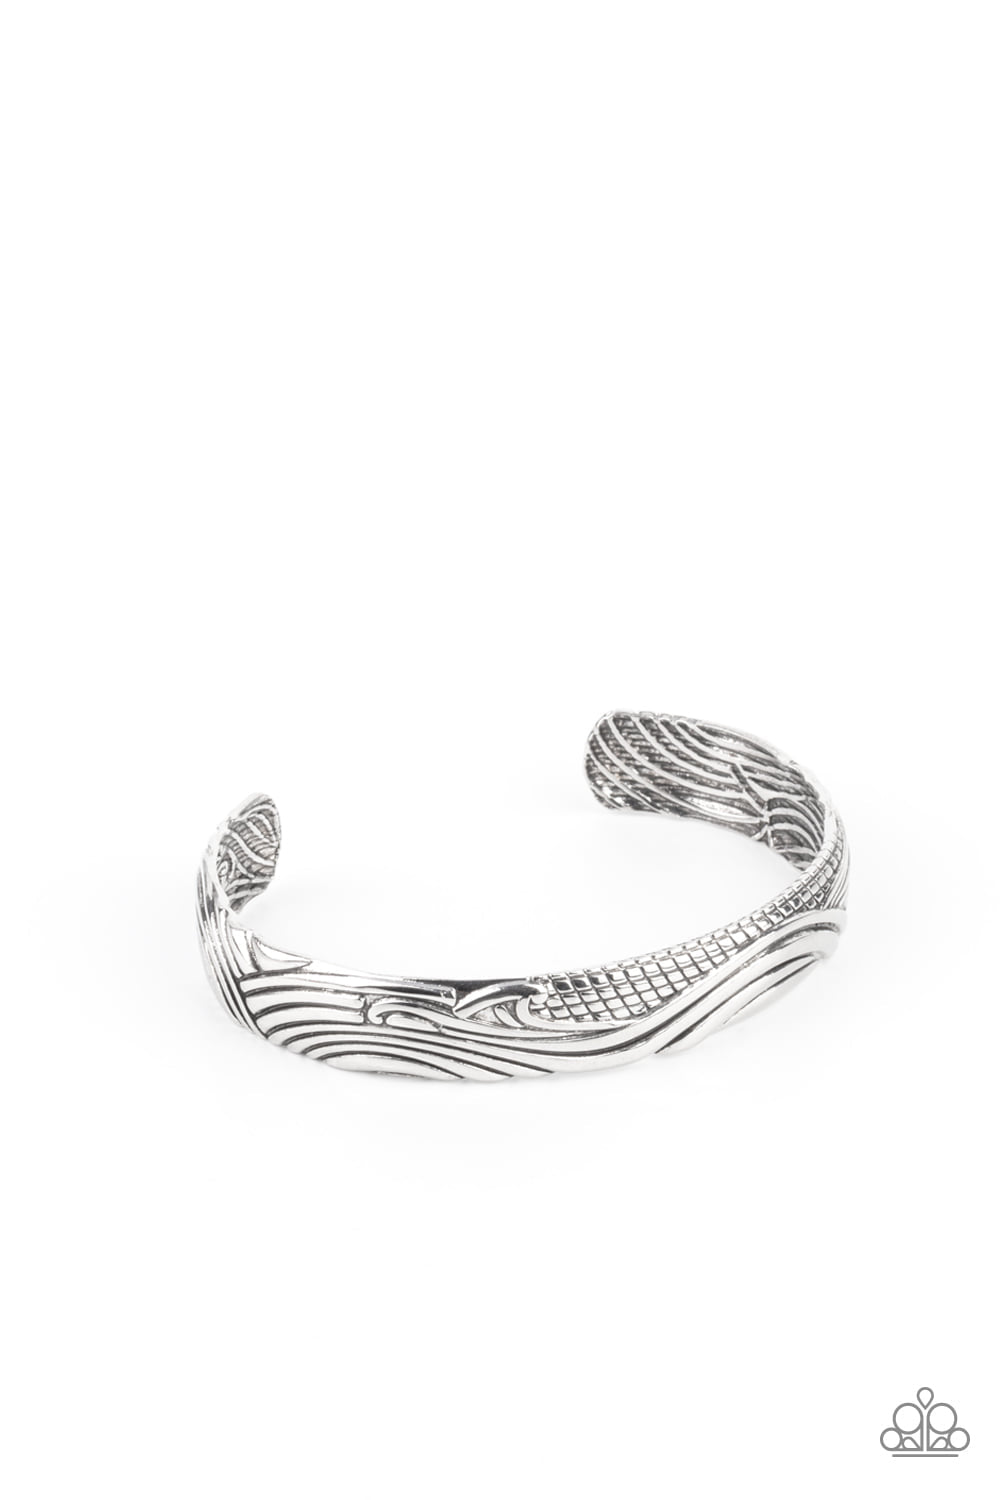 Tidal Trek - Silver Men's Bracelet